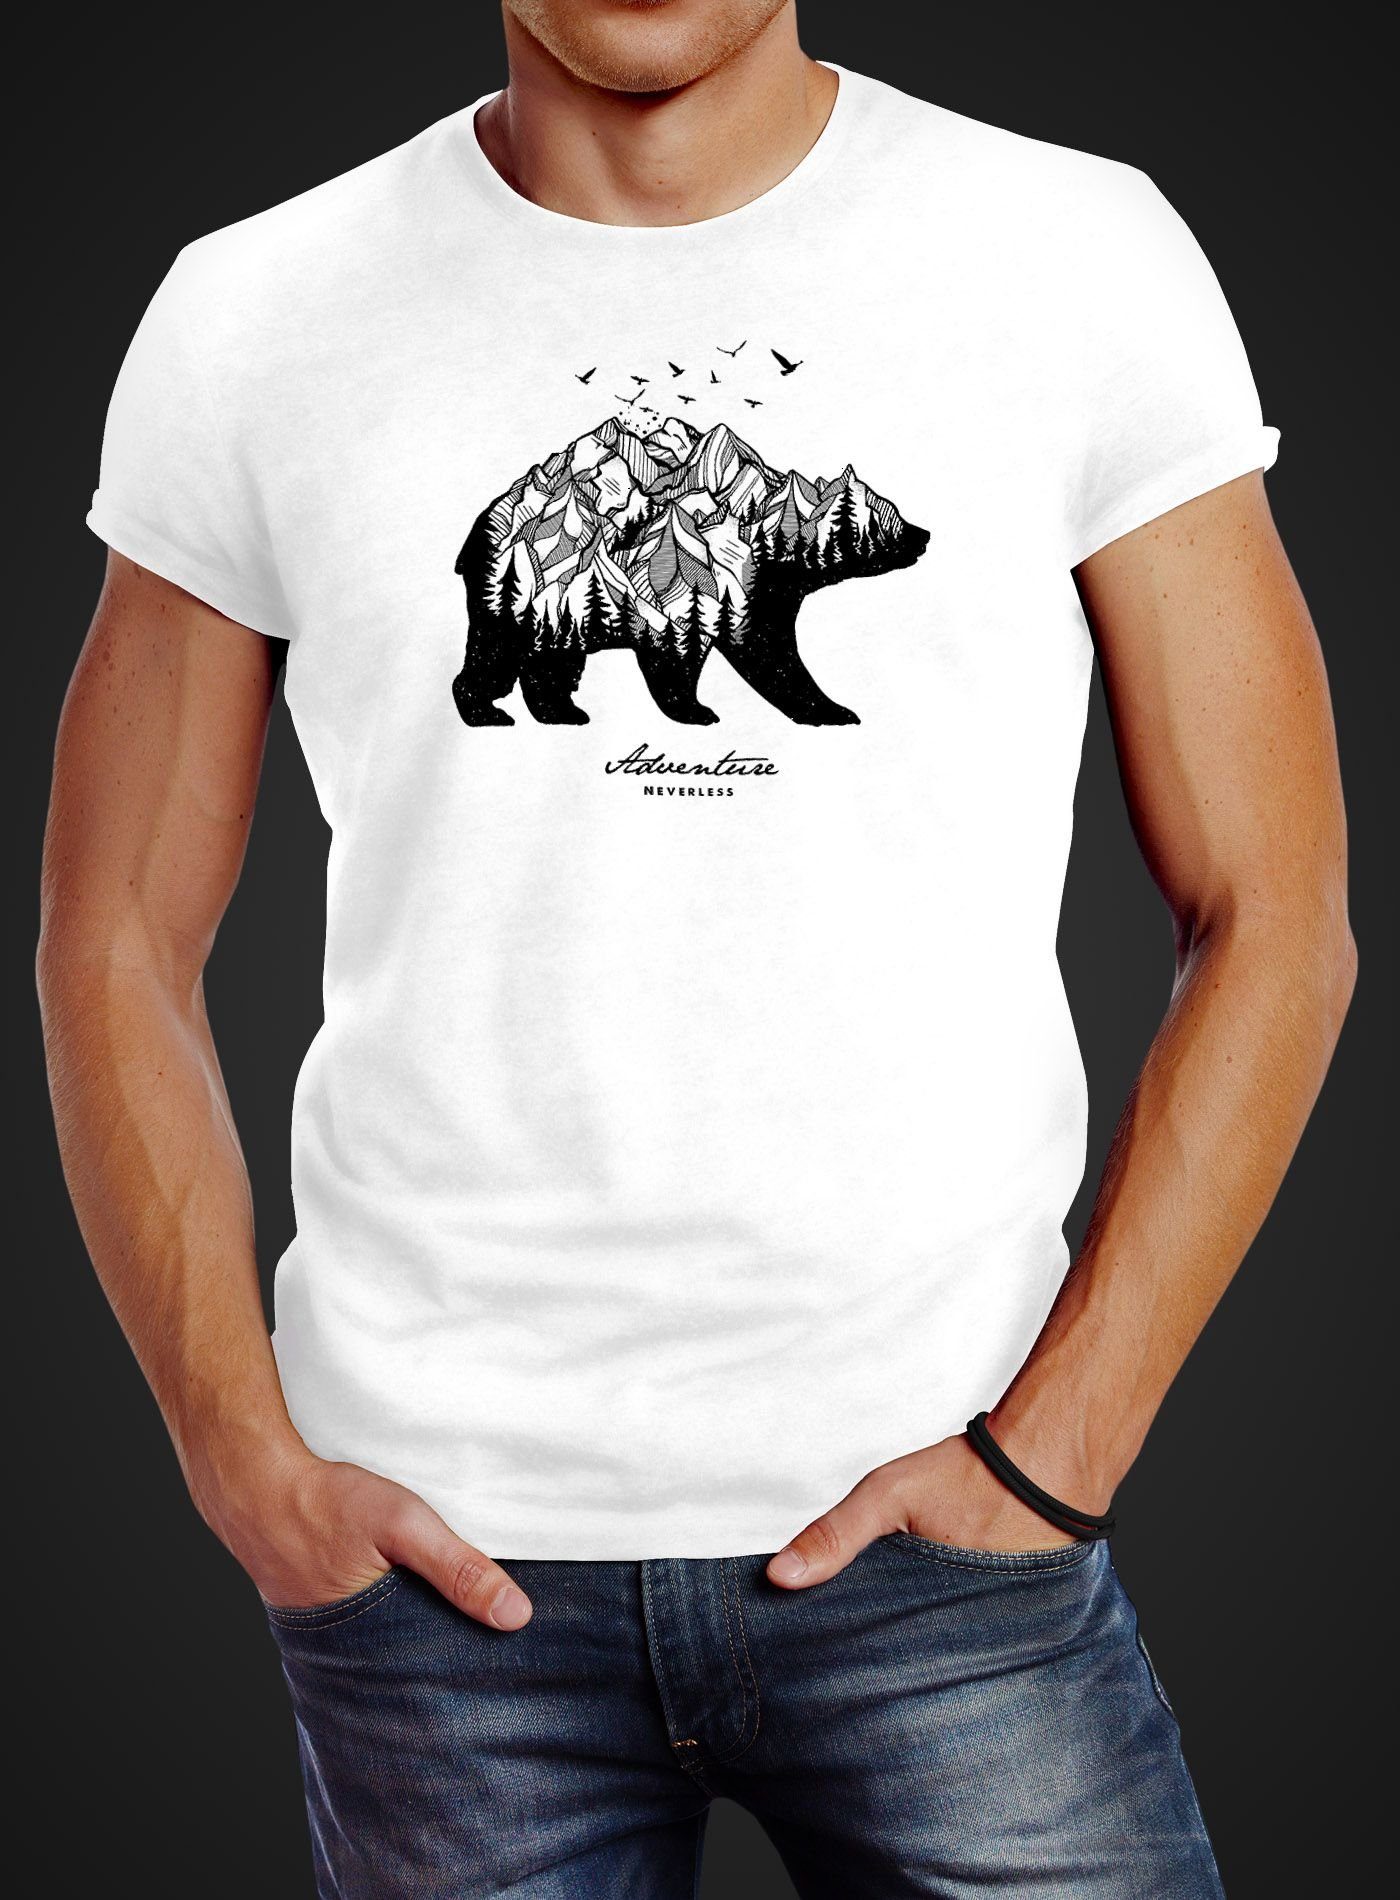 Adventure Bear Mountains Fit Abenteuer Neverless Neverless® weiß Berge Print-Shirt mit Bär Wald Print Herren Slim T-Shirt